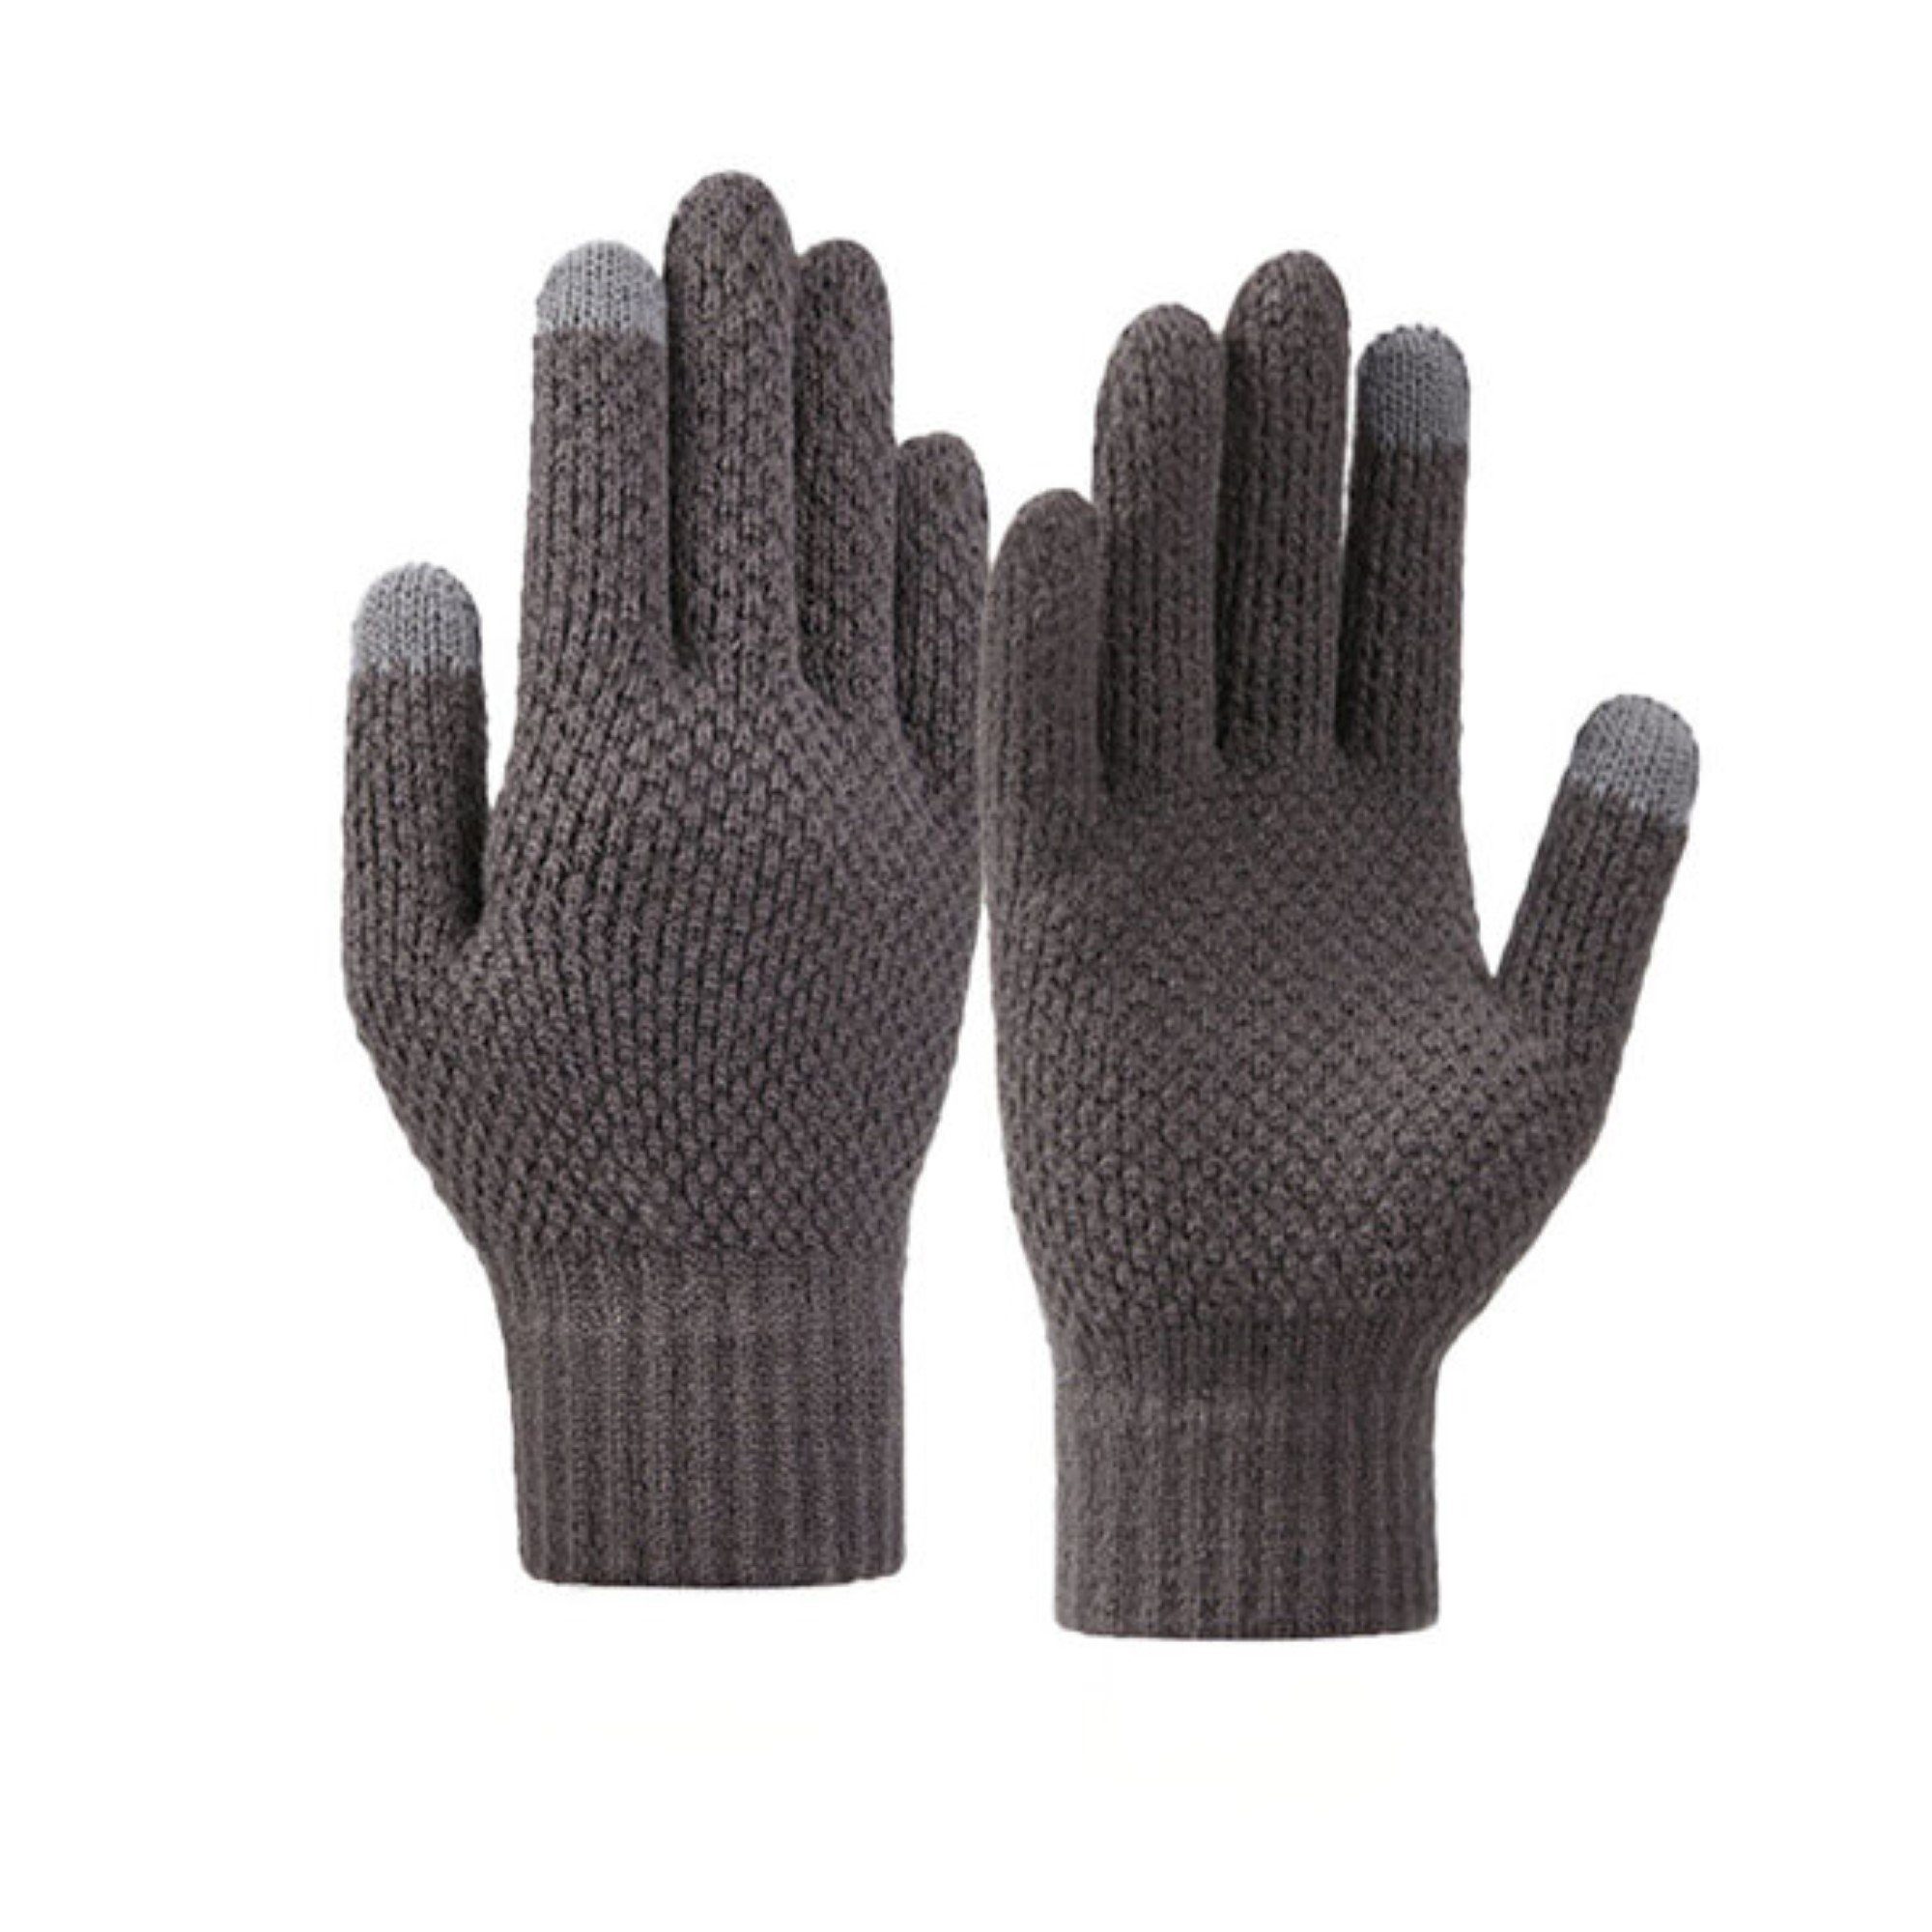 COFI 1453 Fäustlinge Winterliche geflochtene Handyhandschuhe Handwärmer Grau